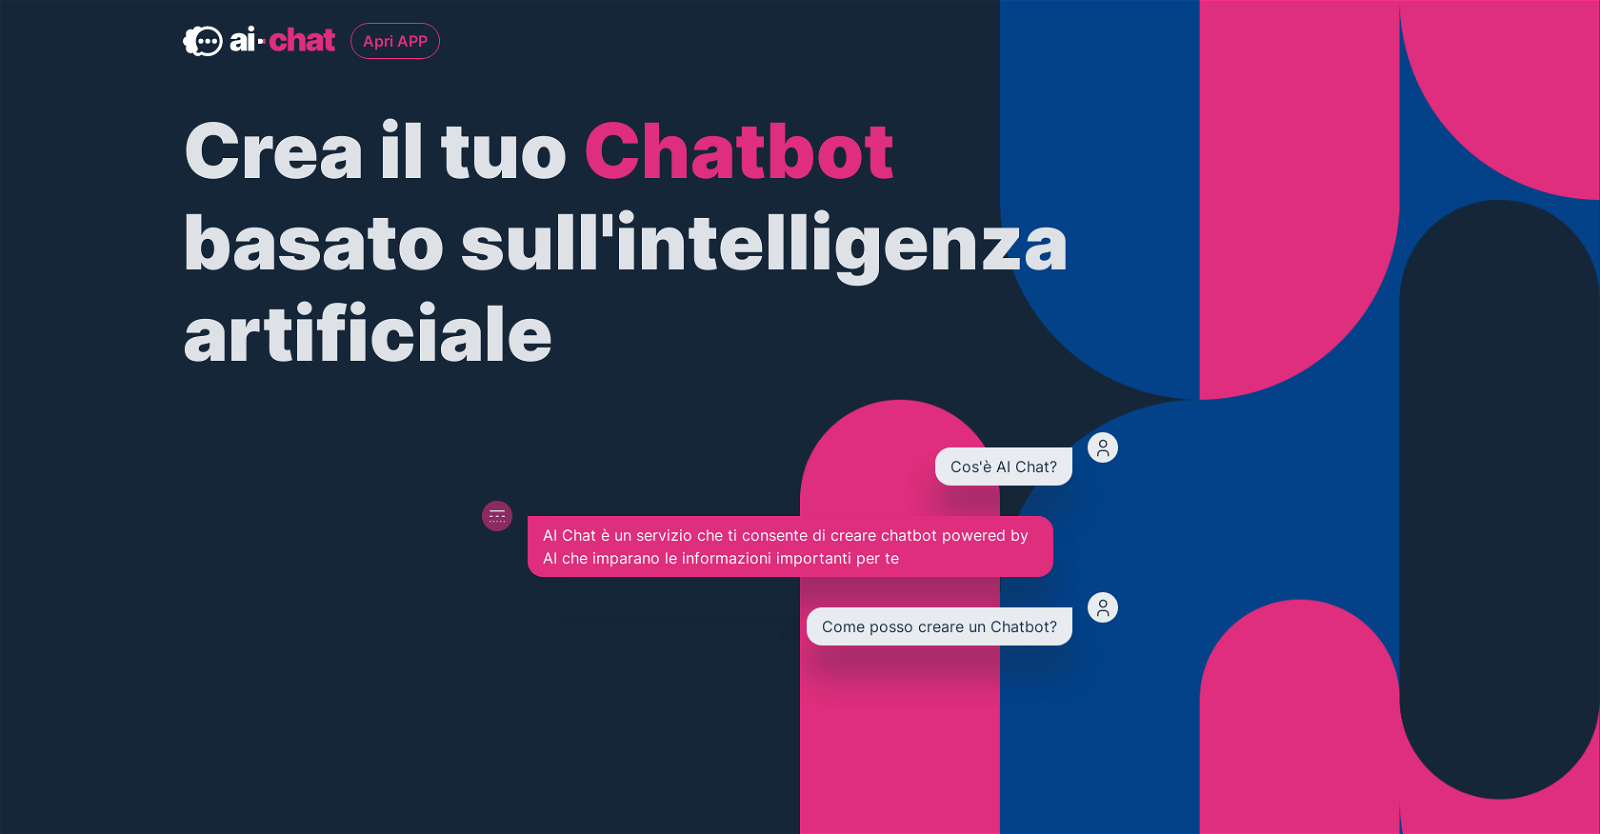 AI-Chat.it website